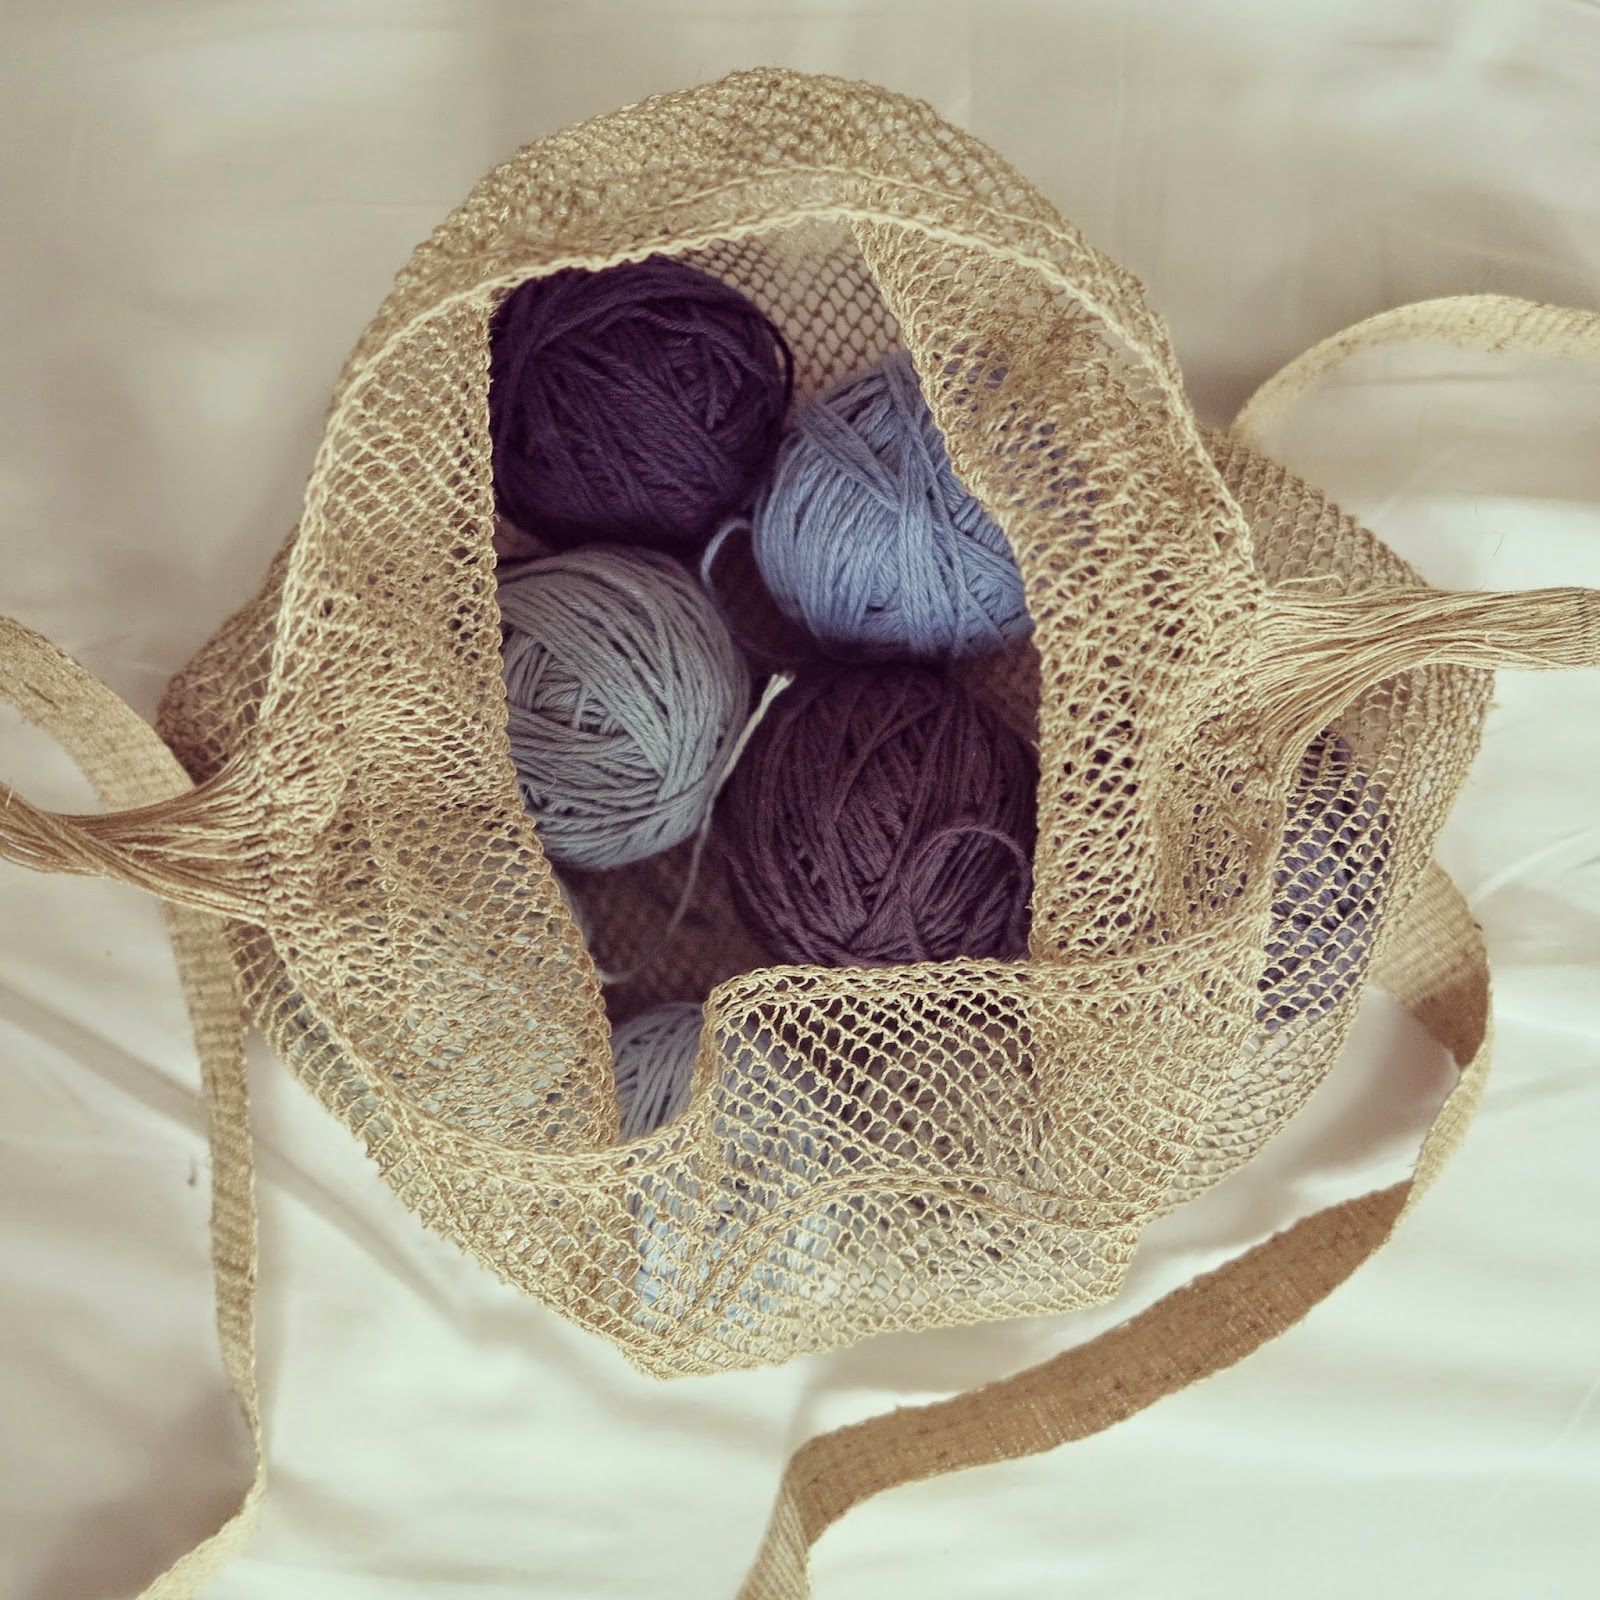 ByHaafner, natural fibres, cotton yarn